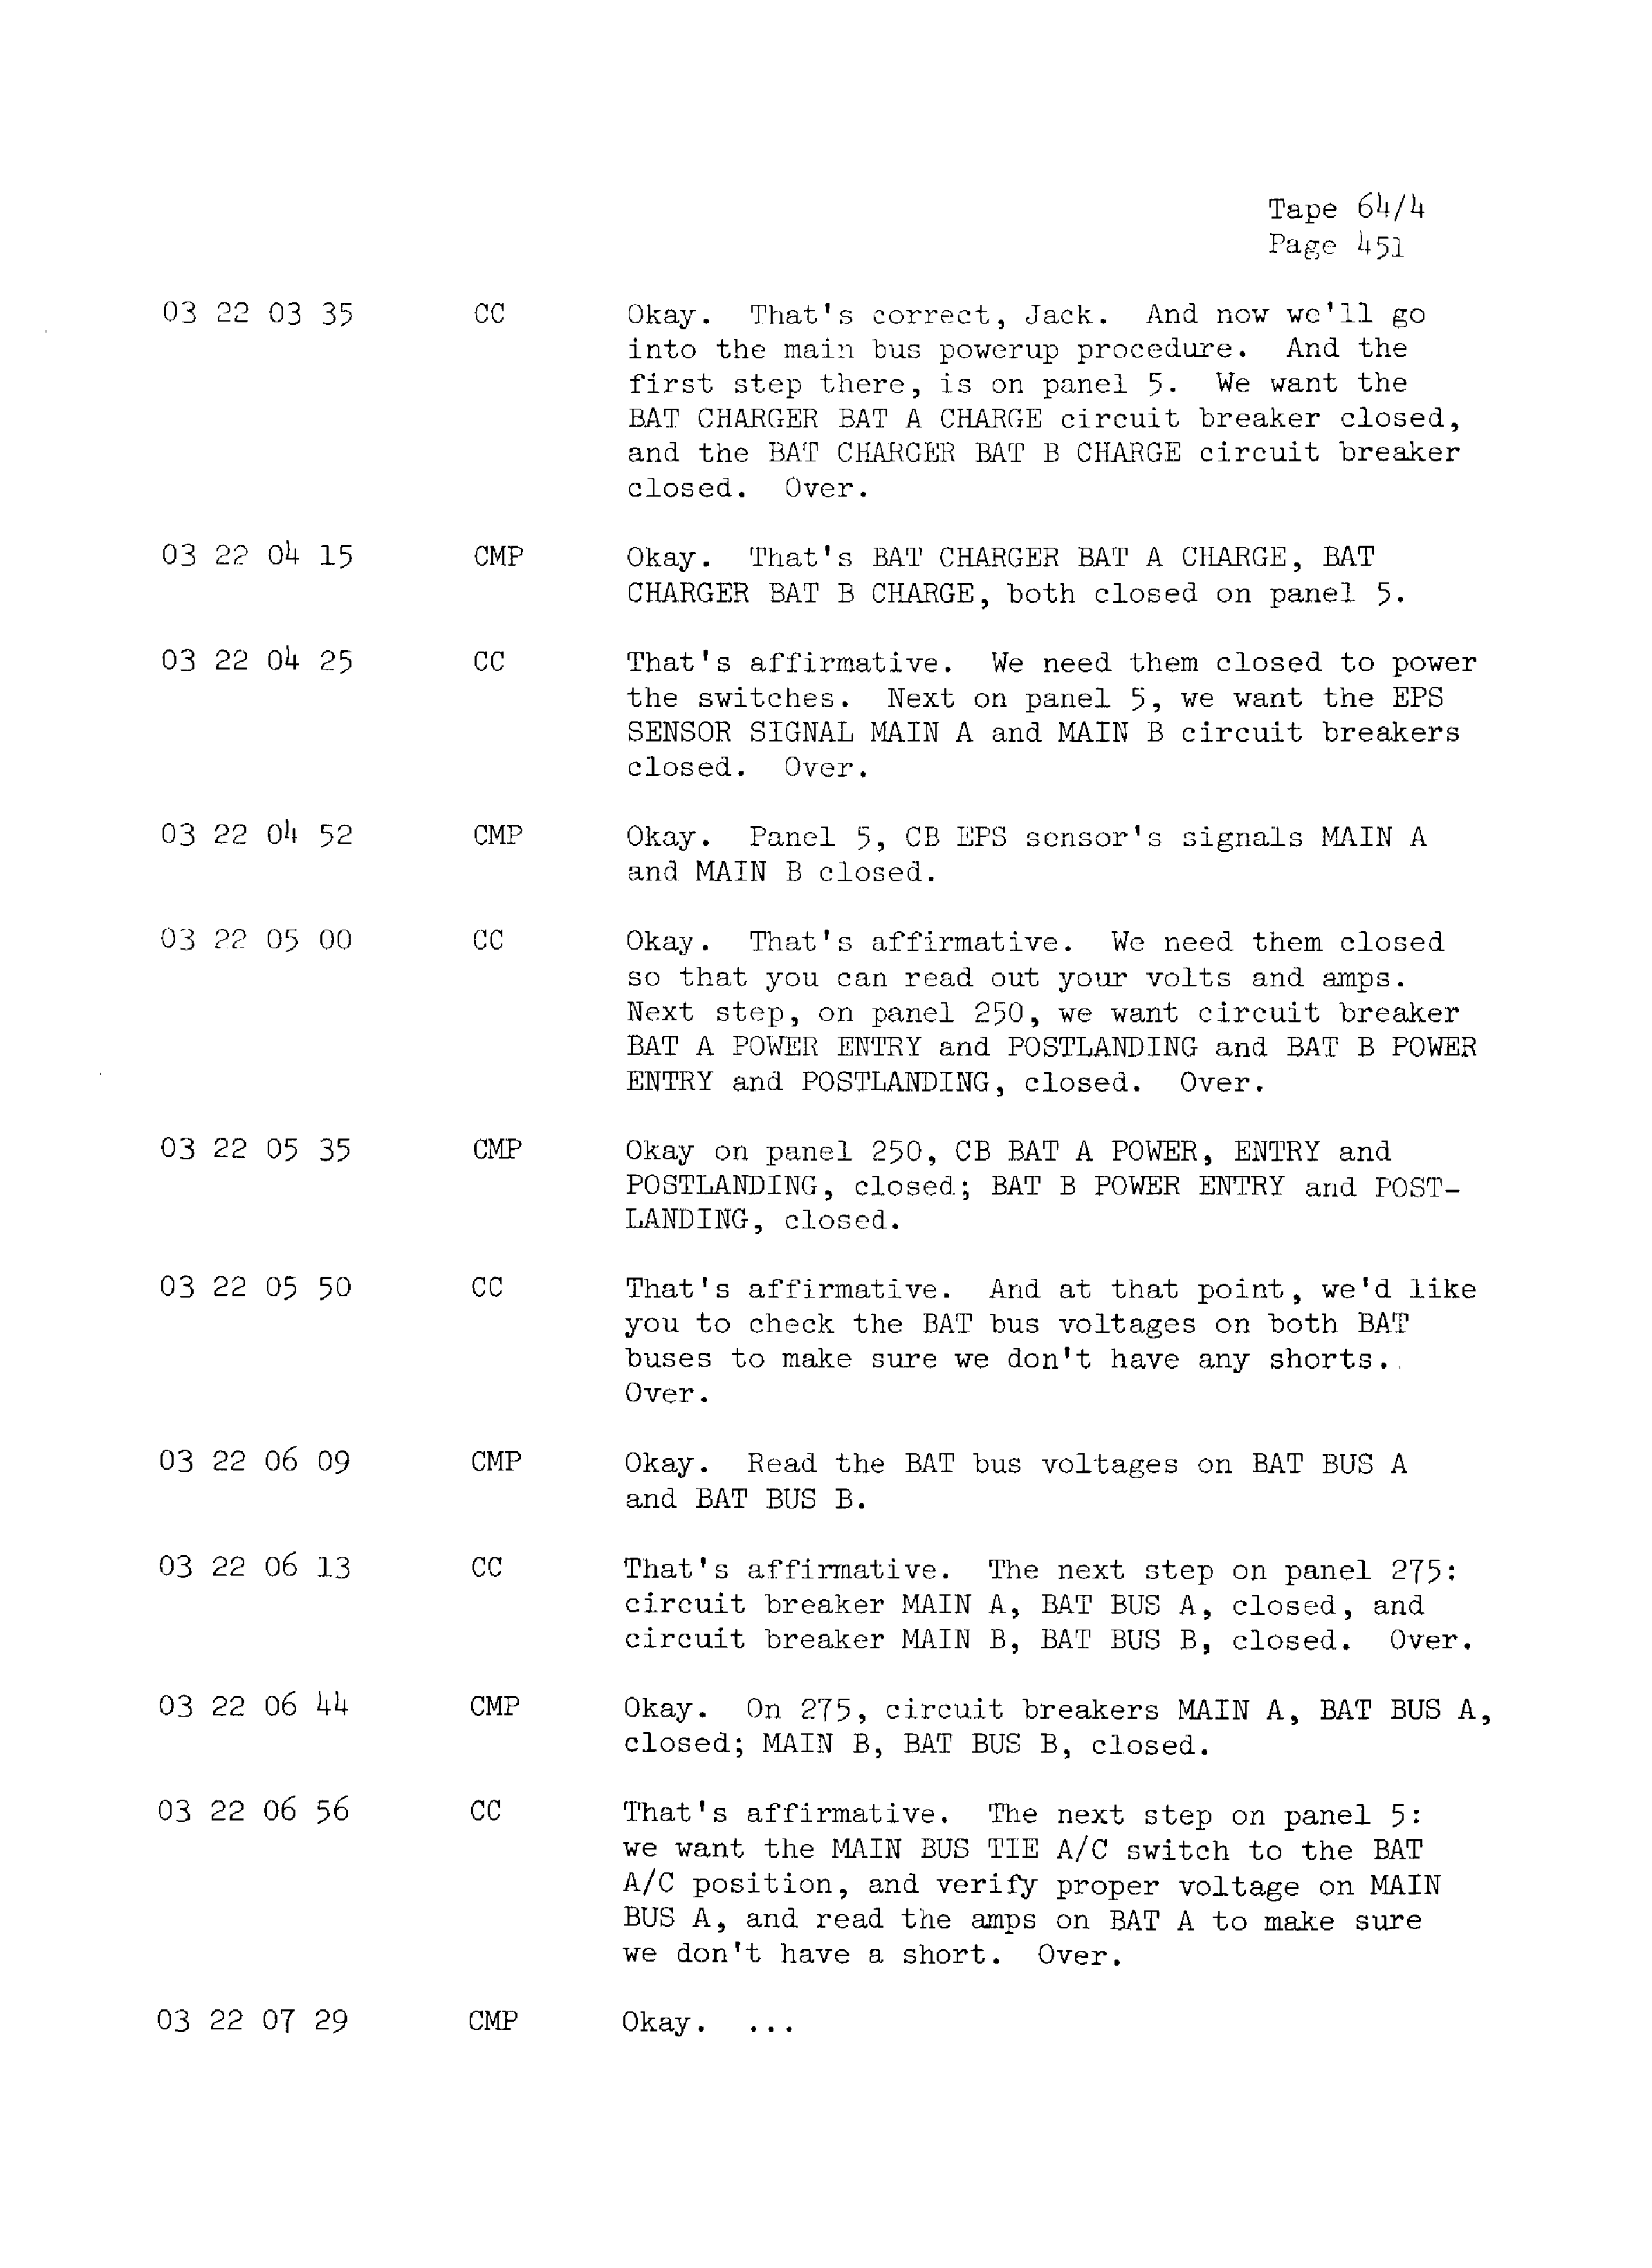 Page 458 of Apollo 13’s original transcript